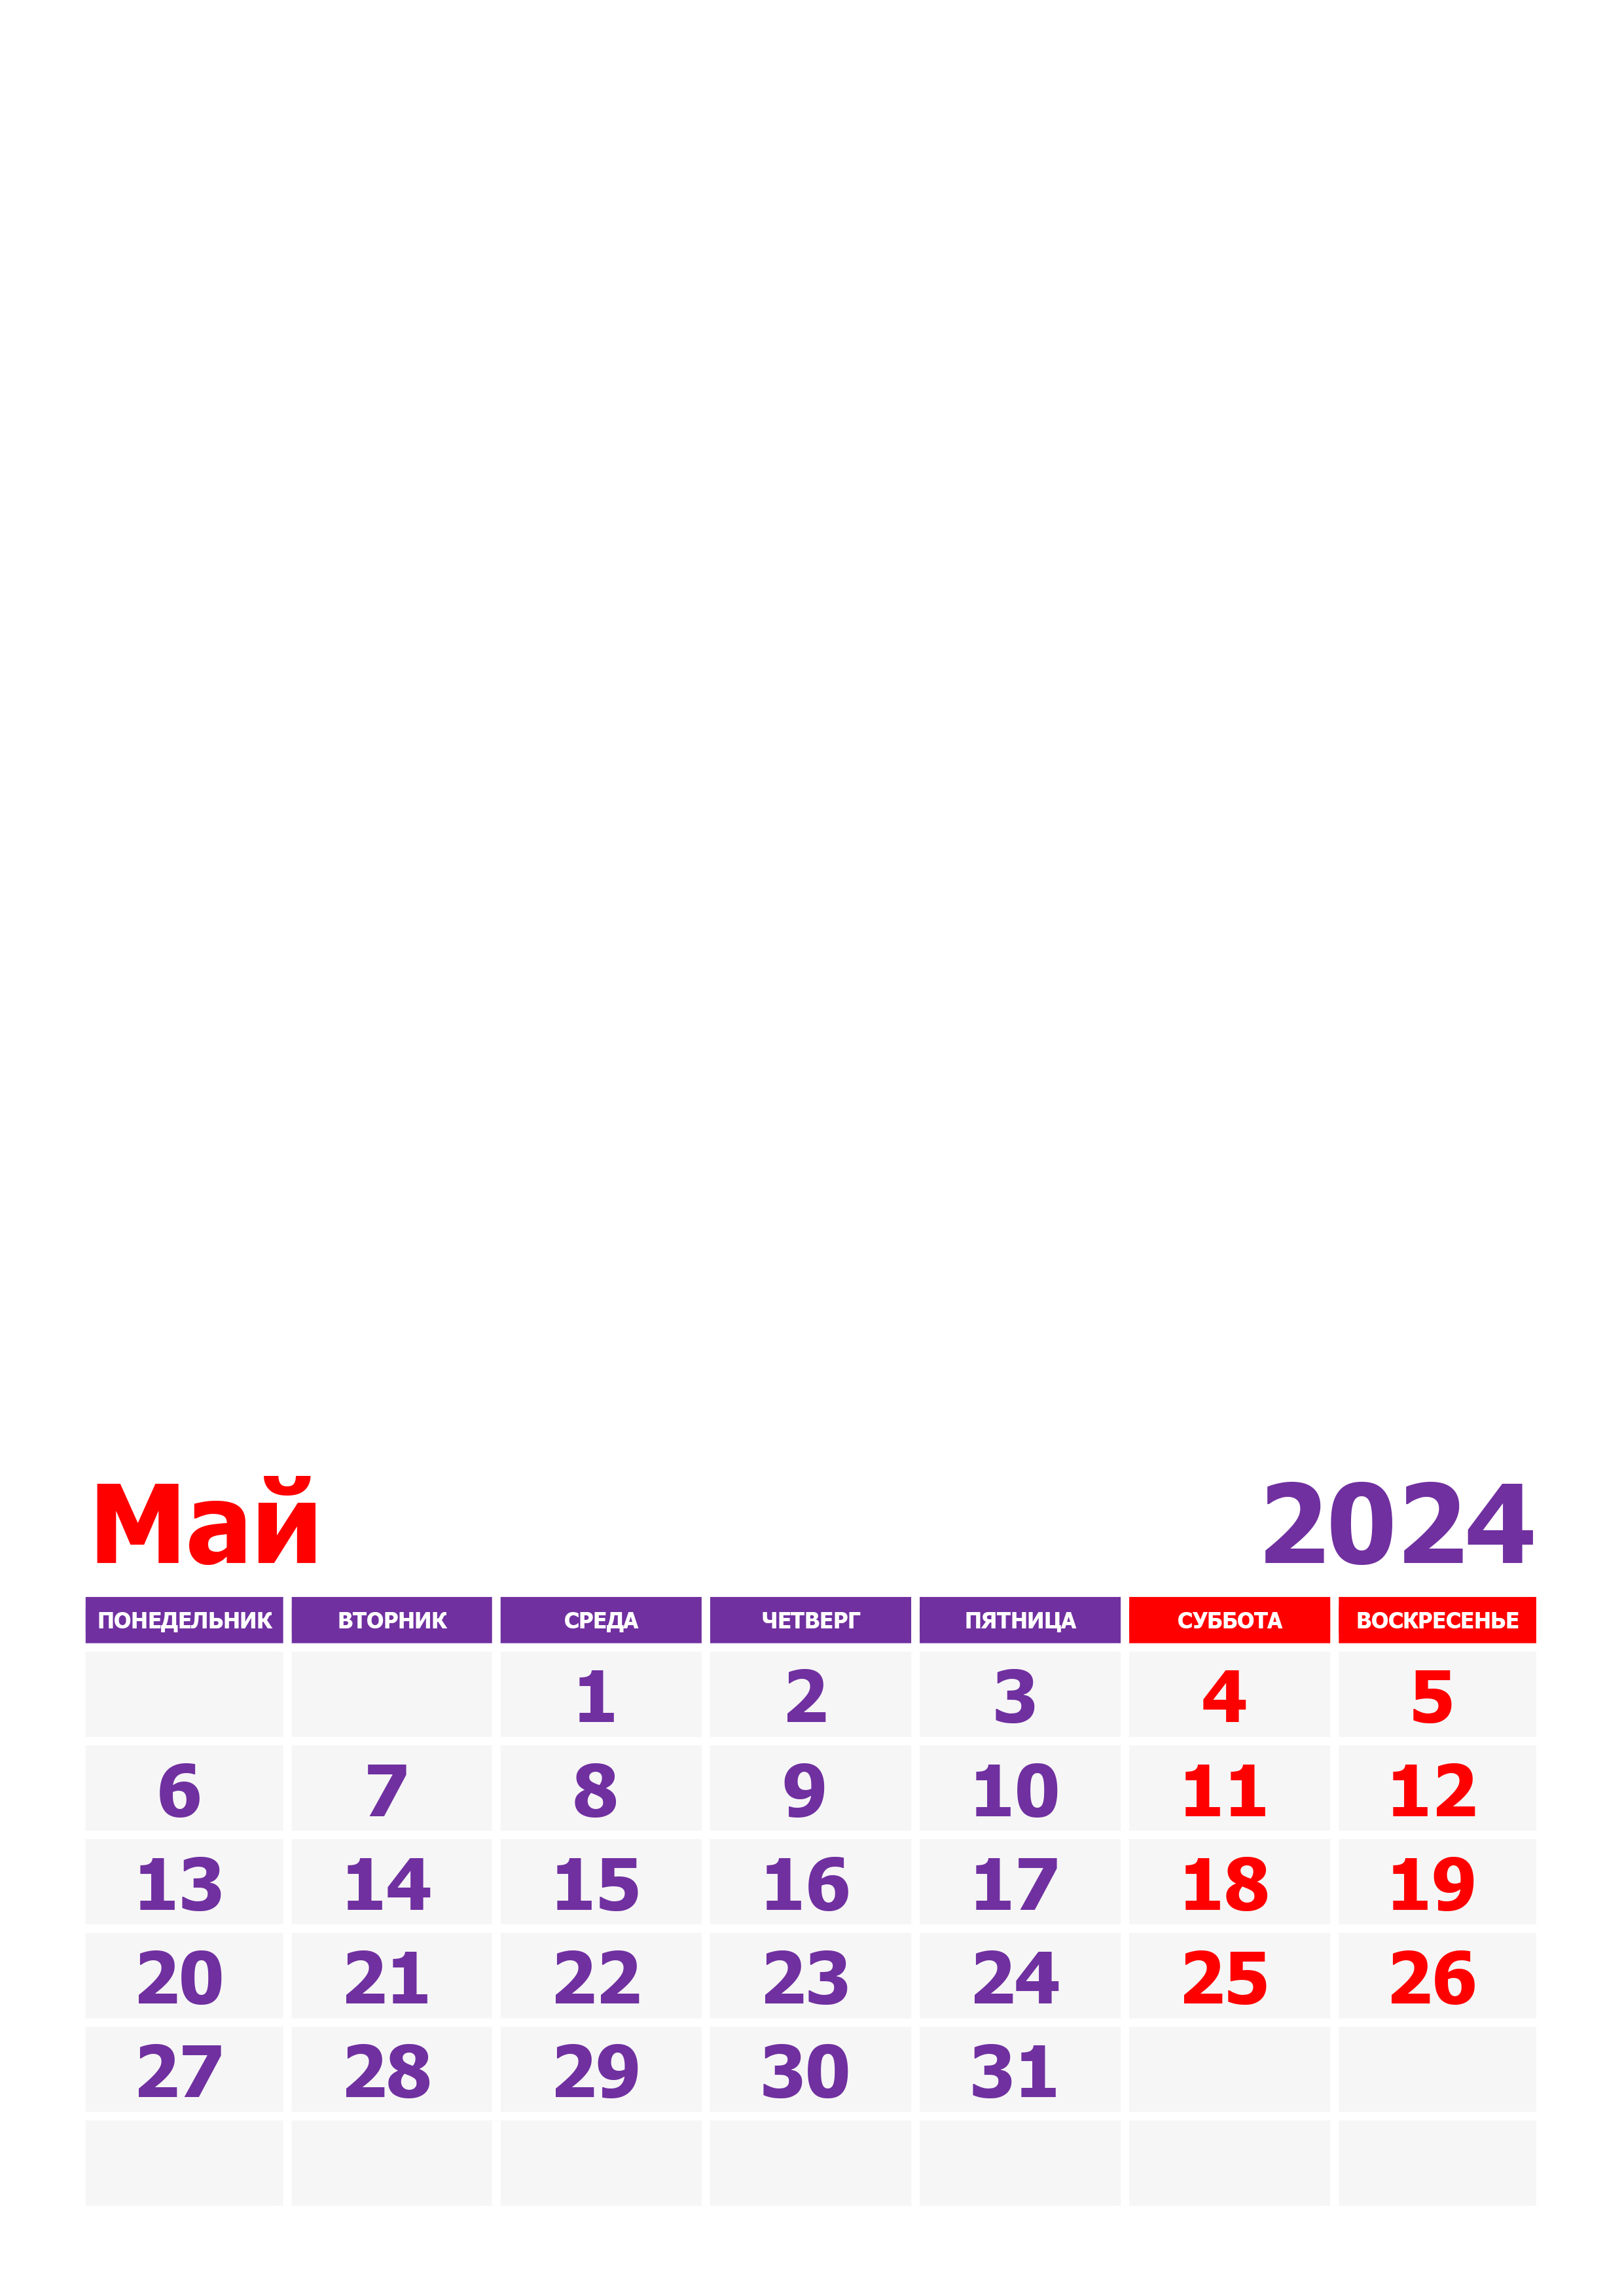 Праздники в мае 2024 г. Календарььна май2024. Май 2024. Vrfktylfhm YF VF 2024. Май 2024 календ.